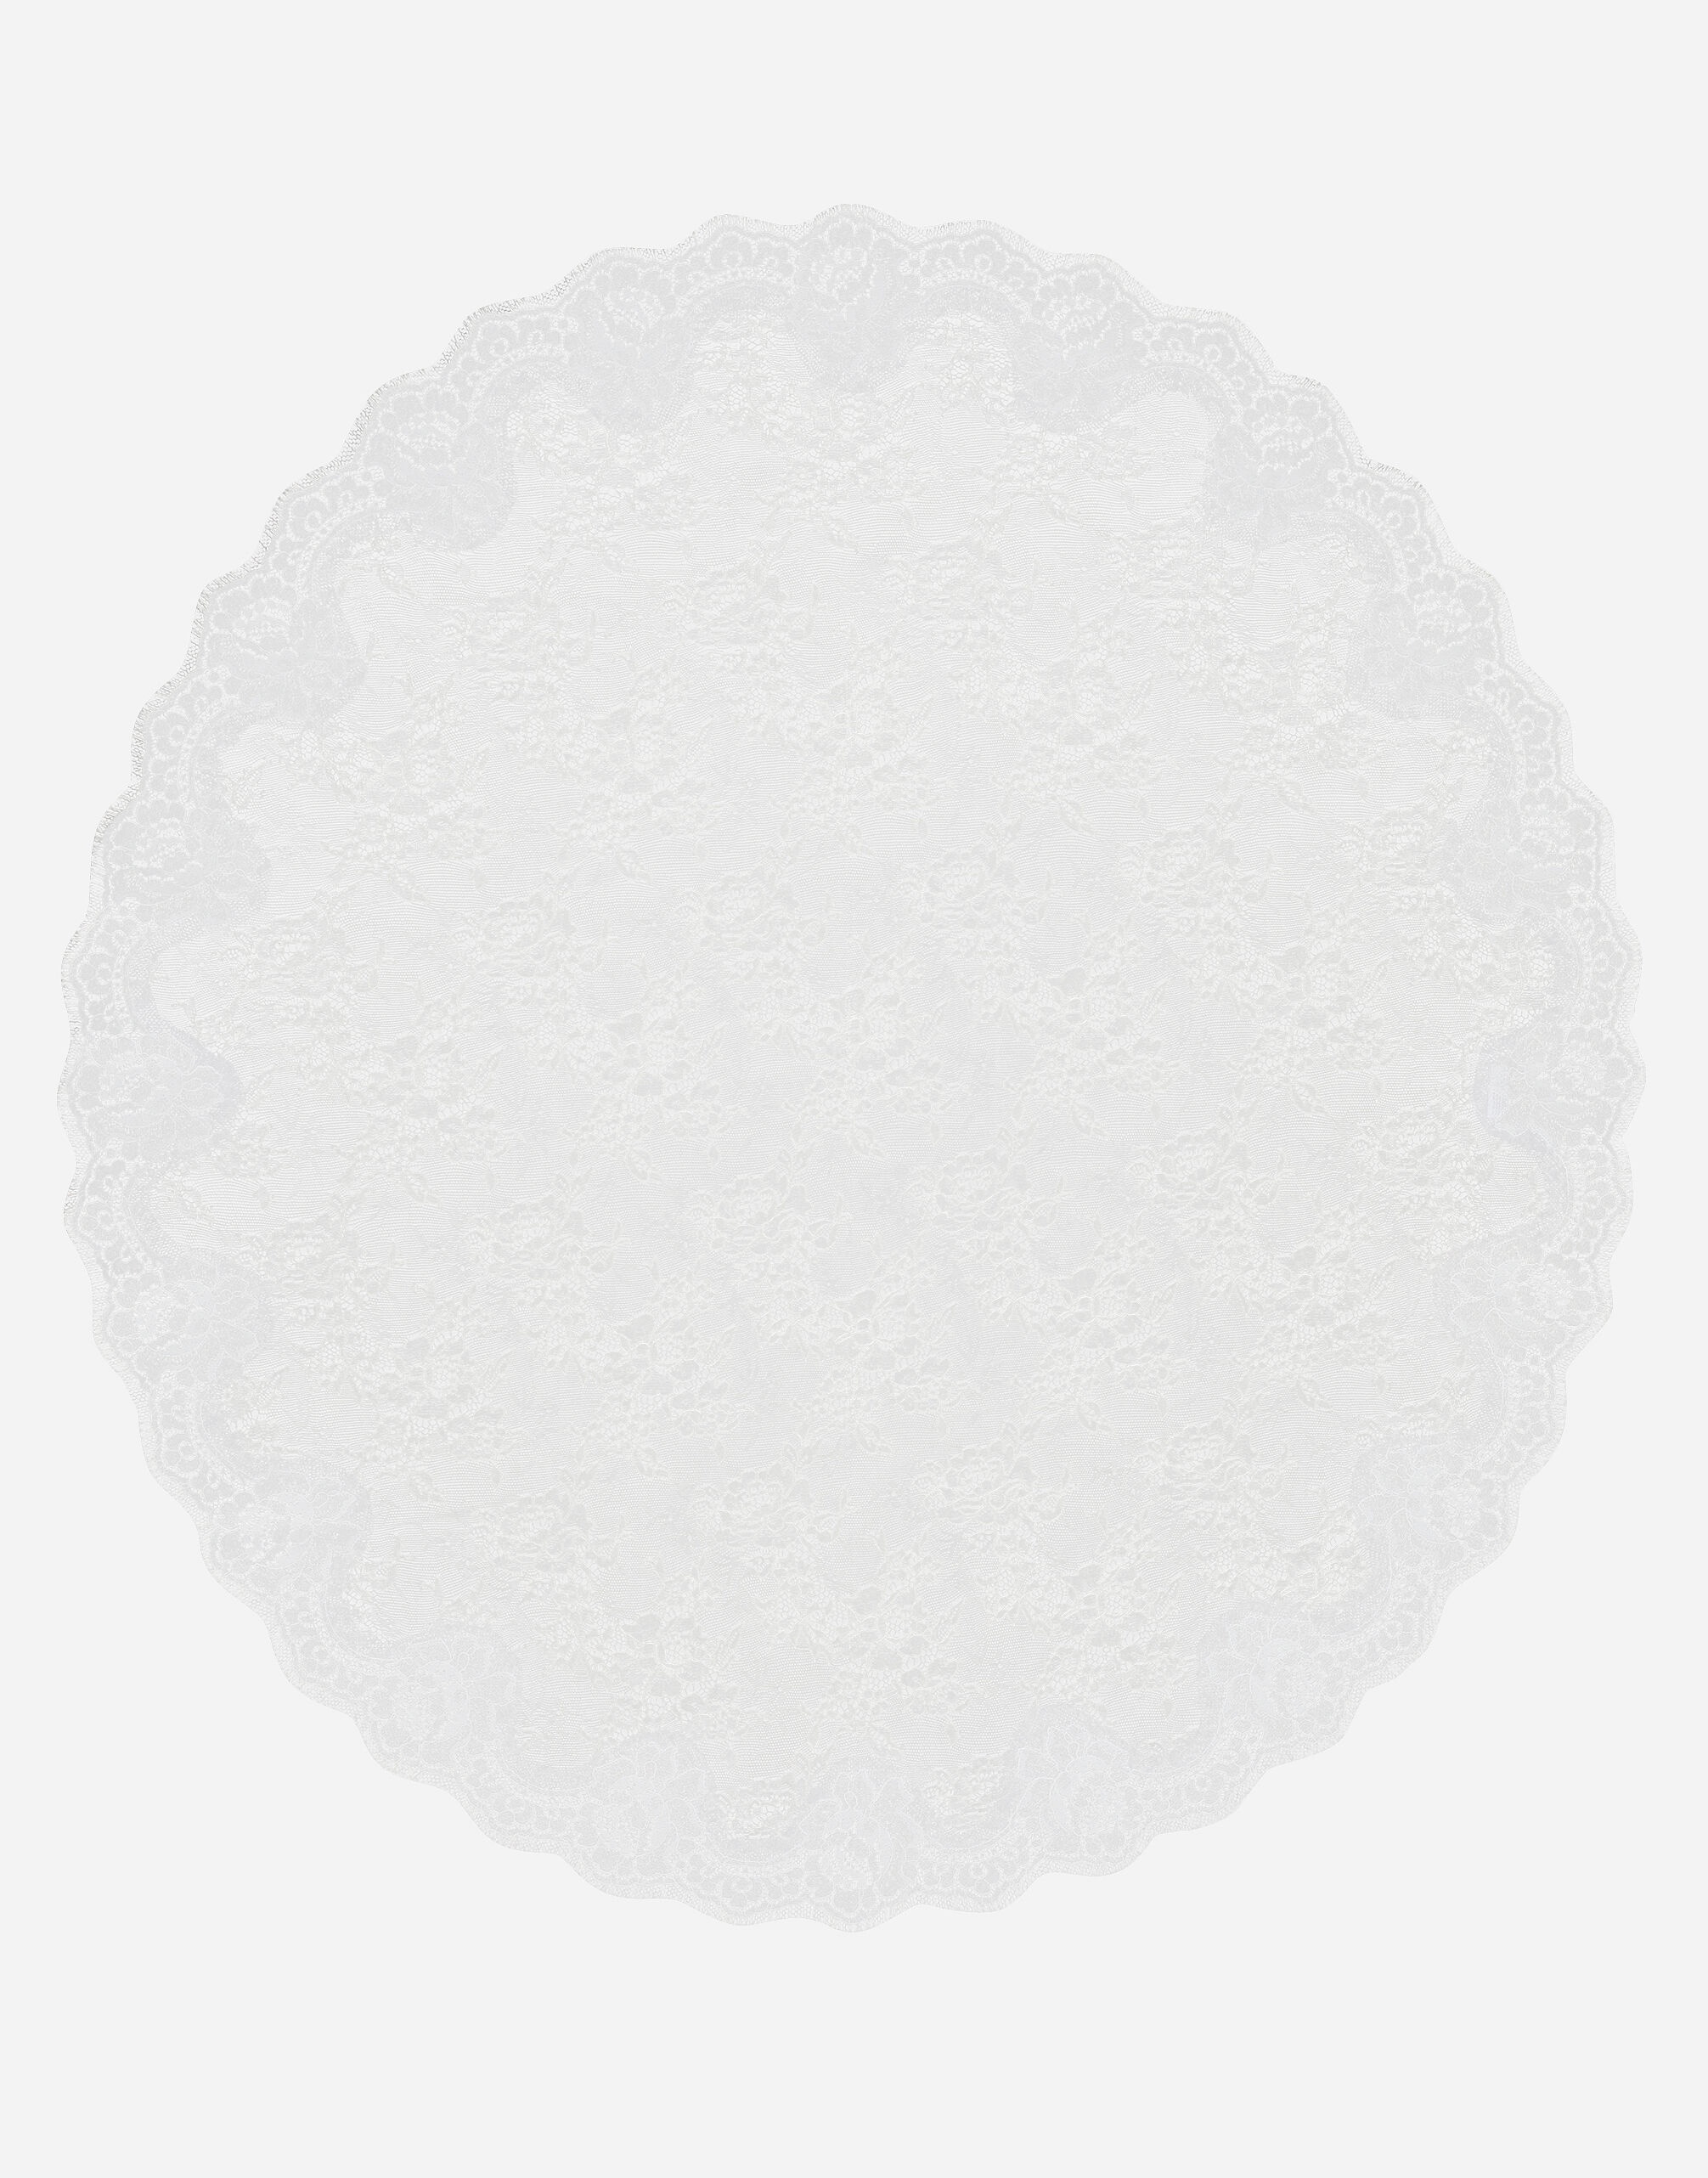 Lace oval veil - 2